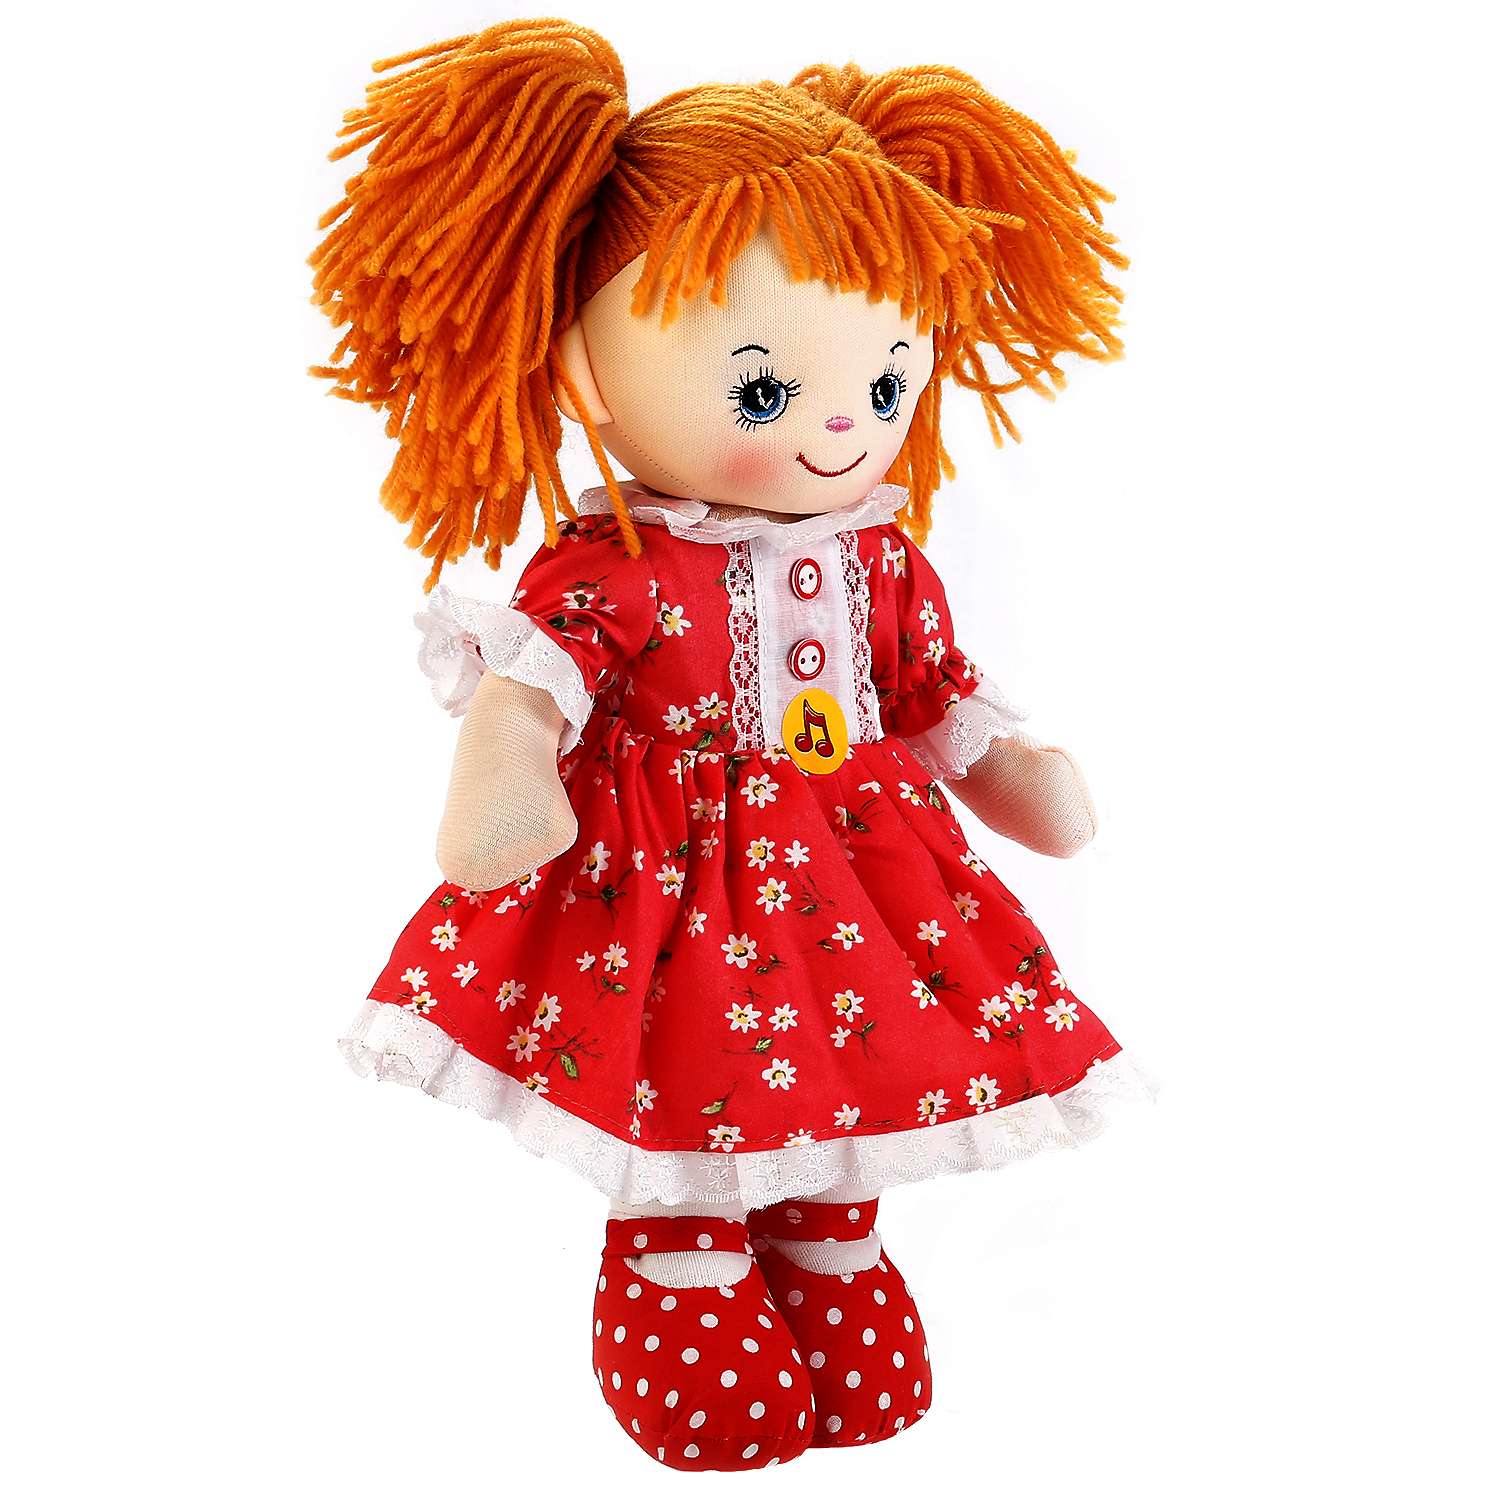 Подарок игрушка кукла. Кукла Антошка игрушка Мульти Пульти. Мягкая кукла. Мягкая кукла для девочек. Куклы мягконабивные.